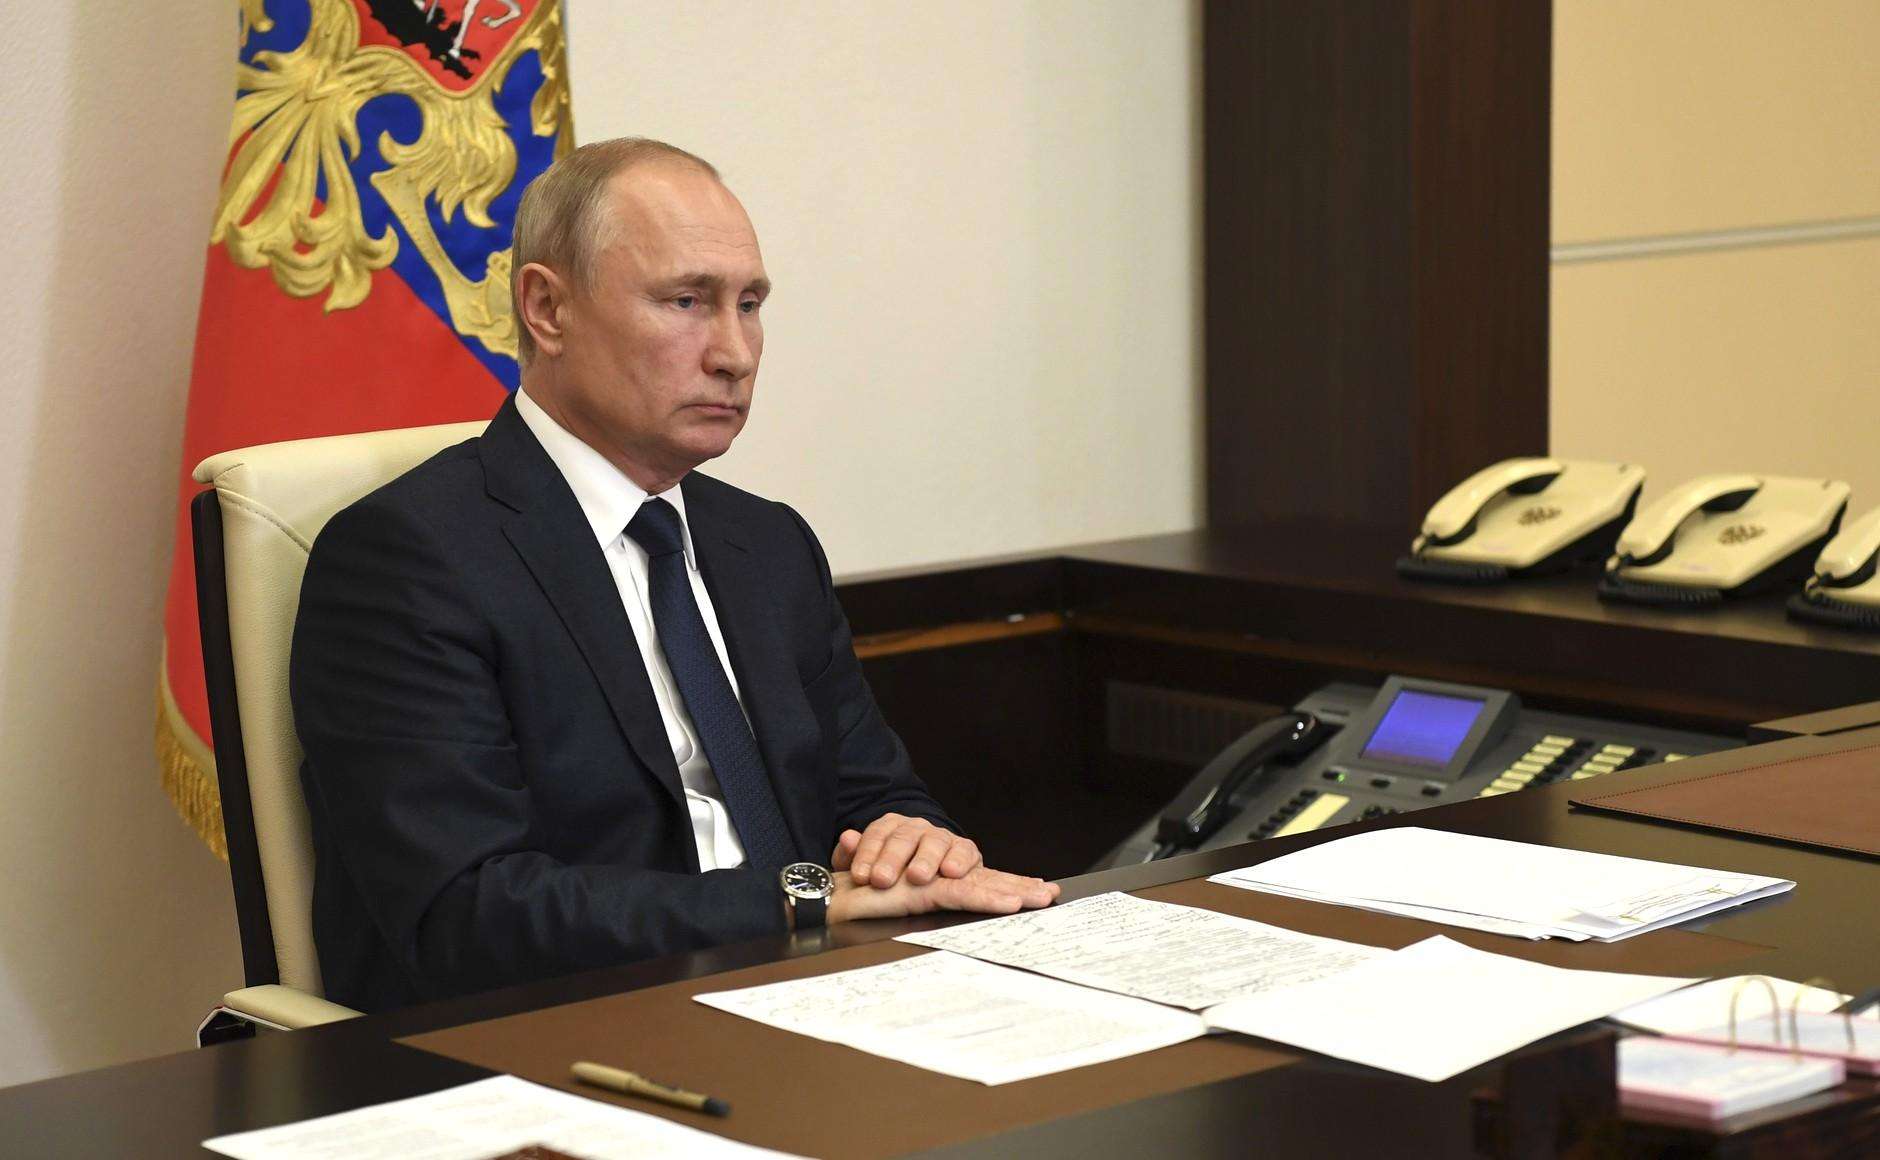 Голосование за поправки в Конституцию пройдёт 1 июля  - указ Путина